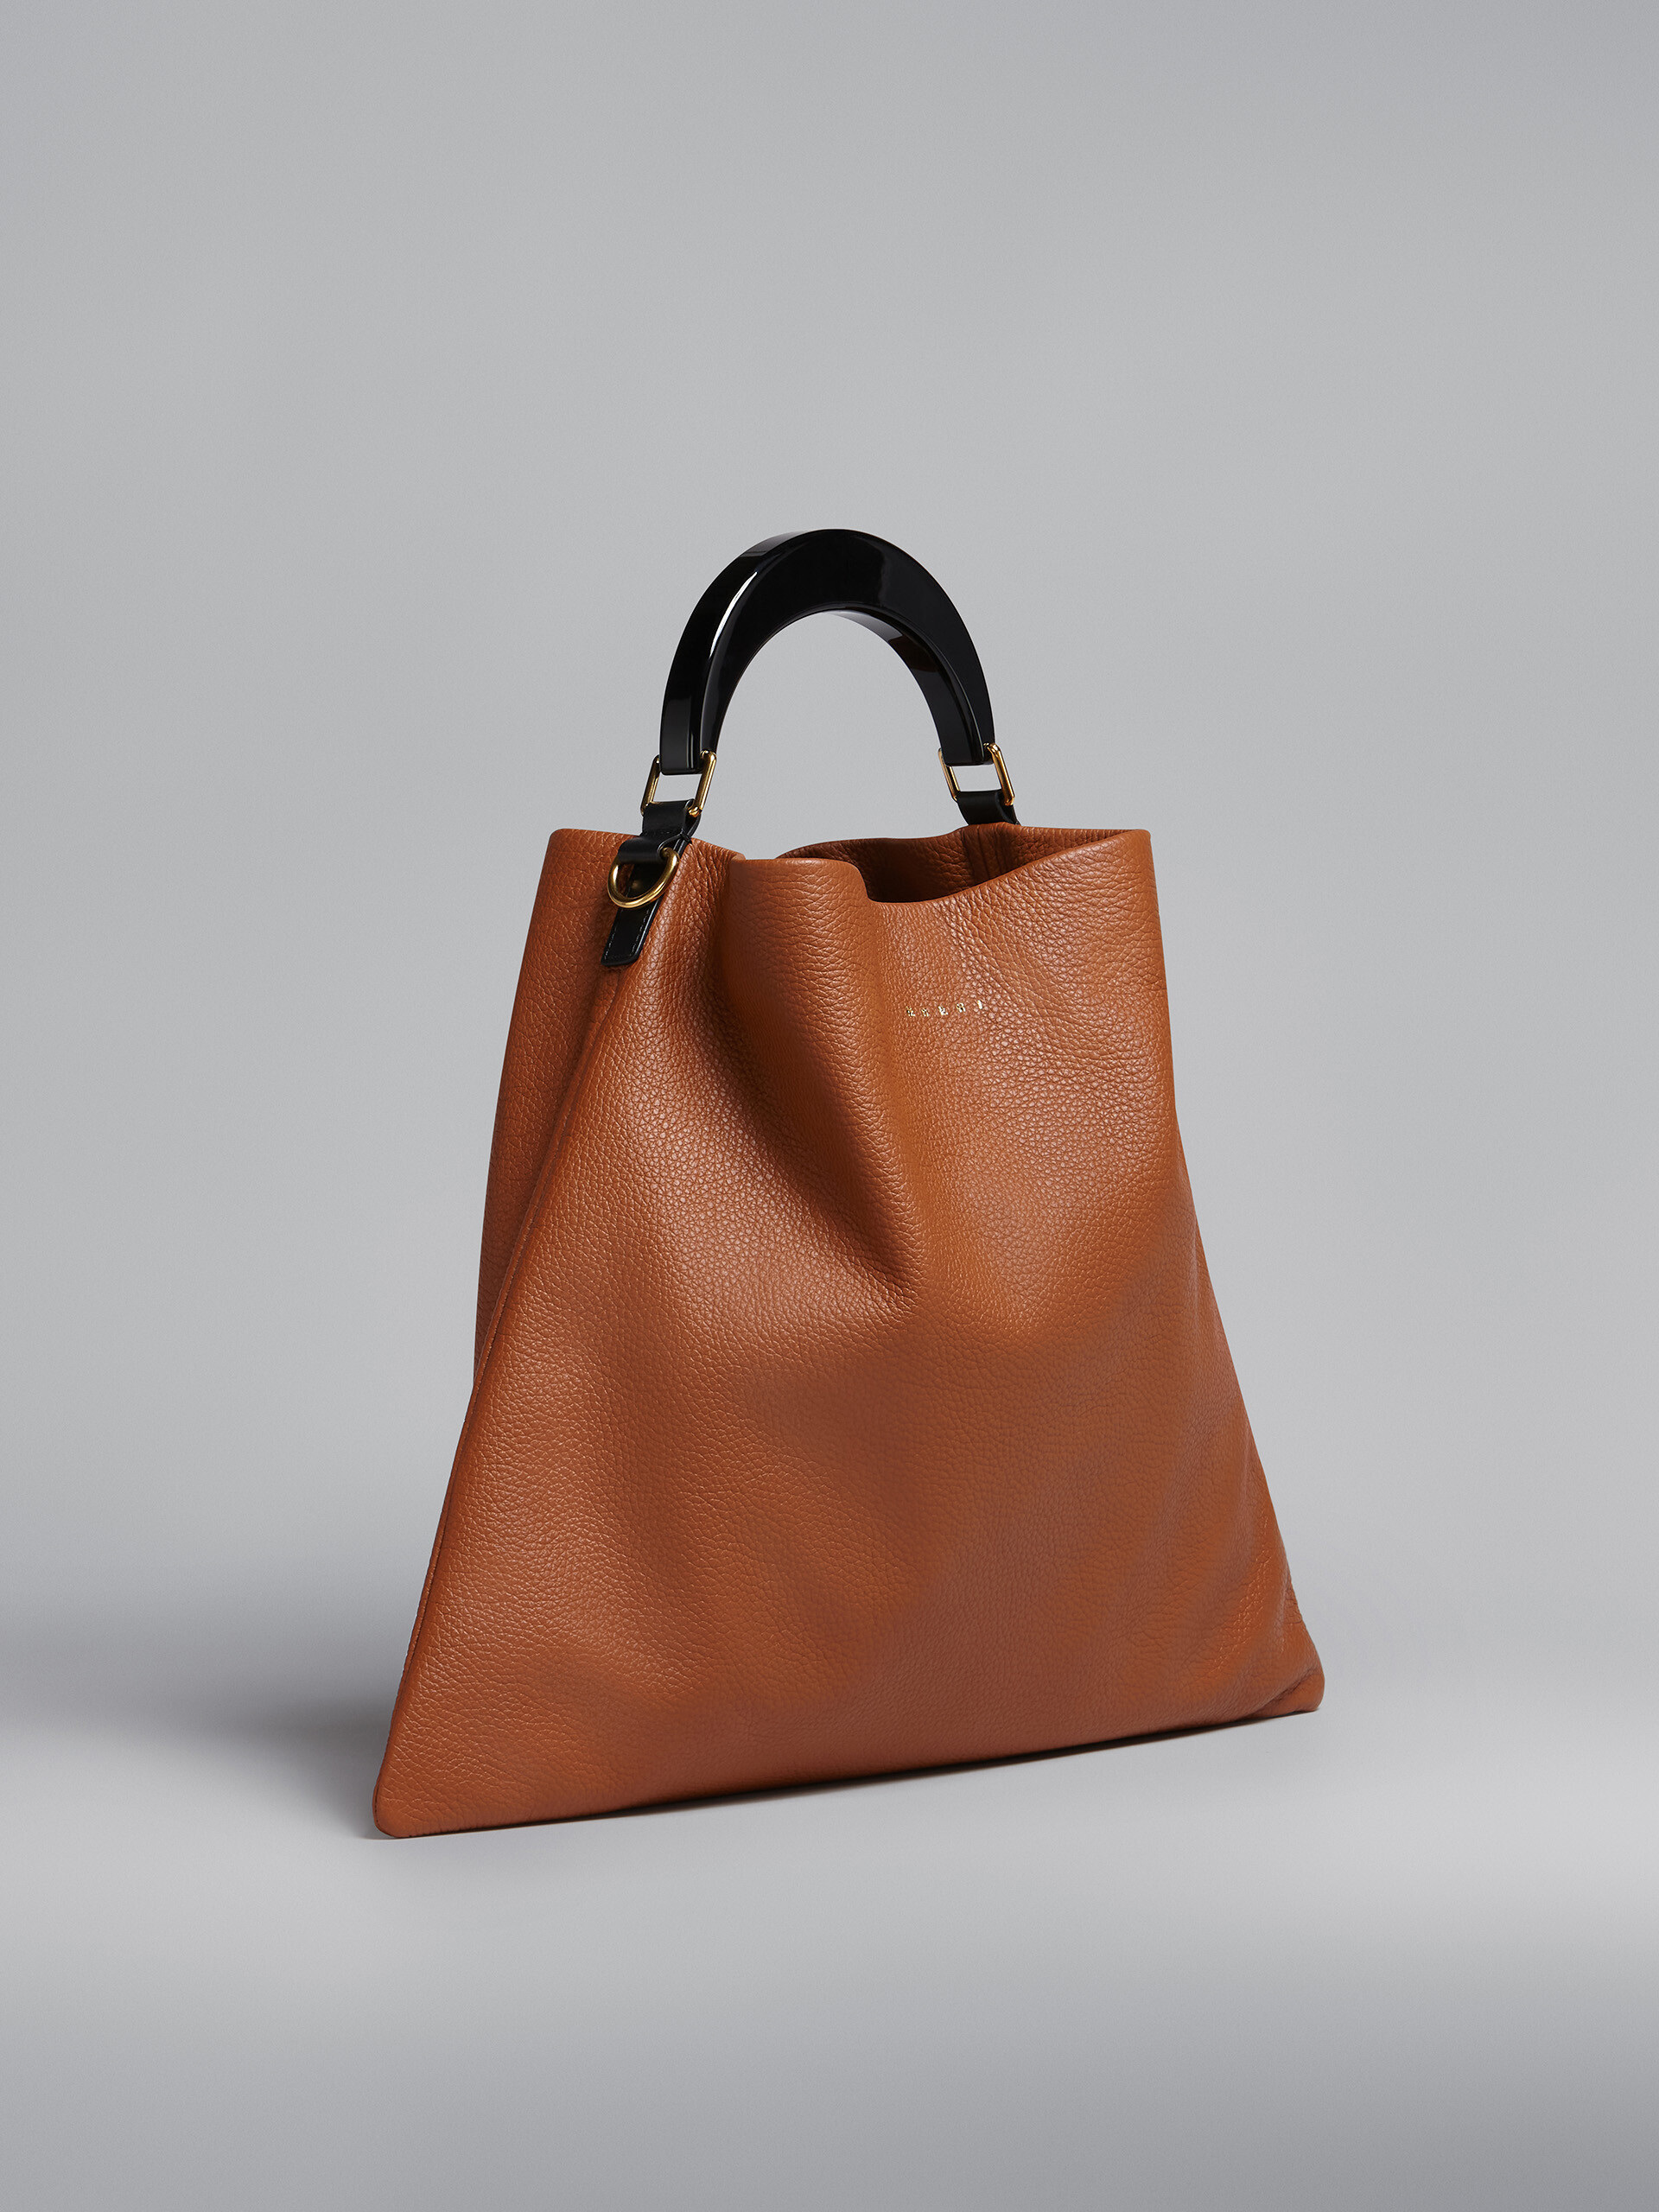 Venice medium bag in brown leather - Shoulder Bag - Image 6